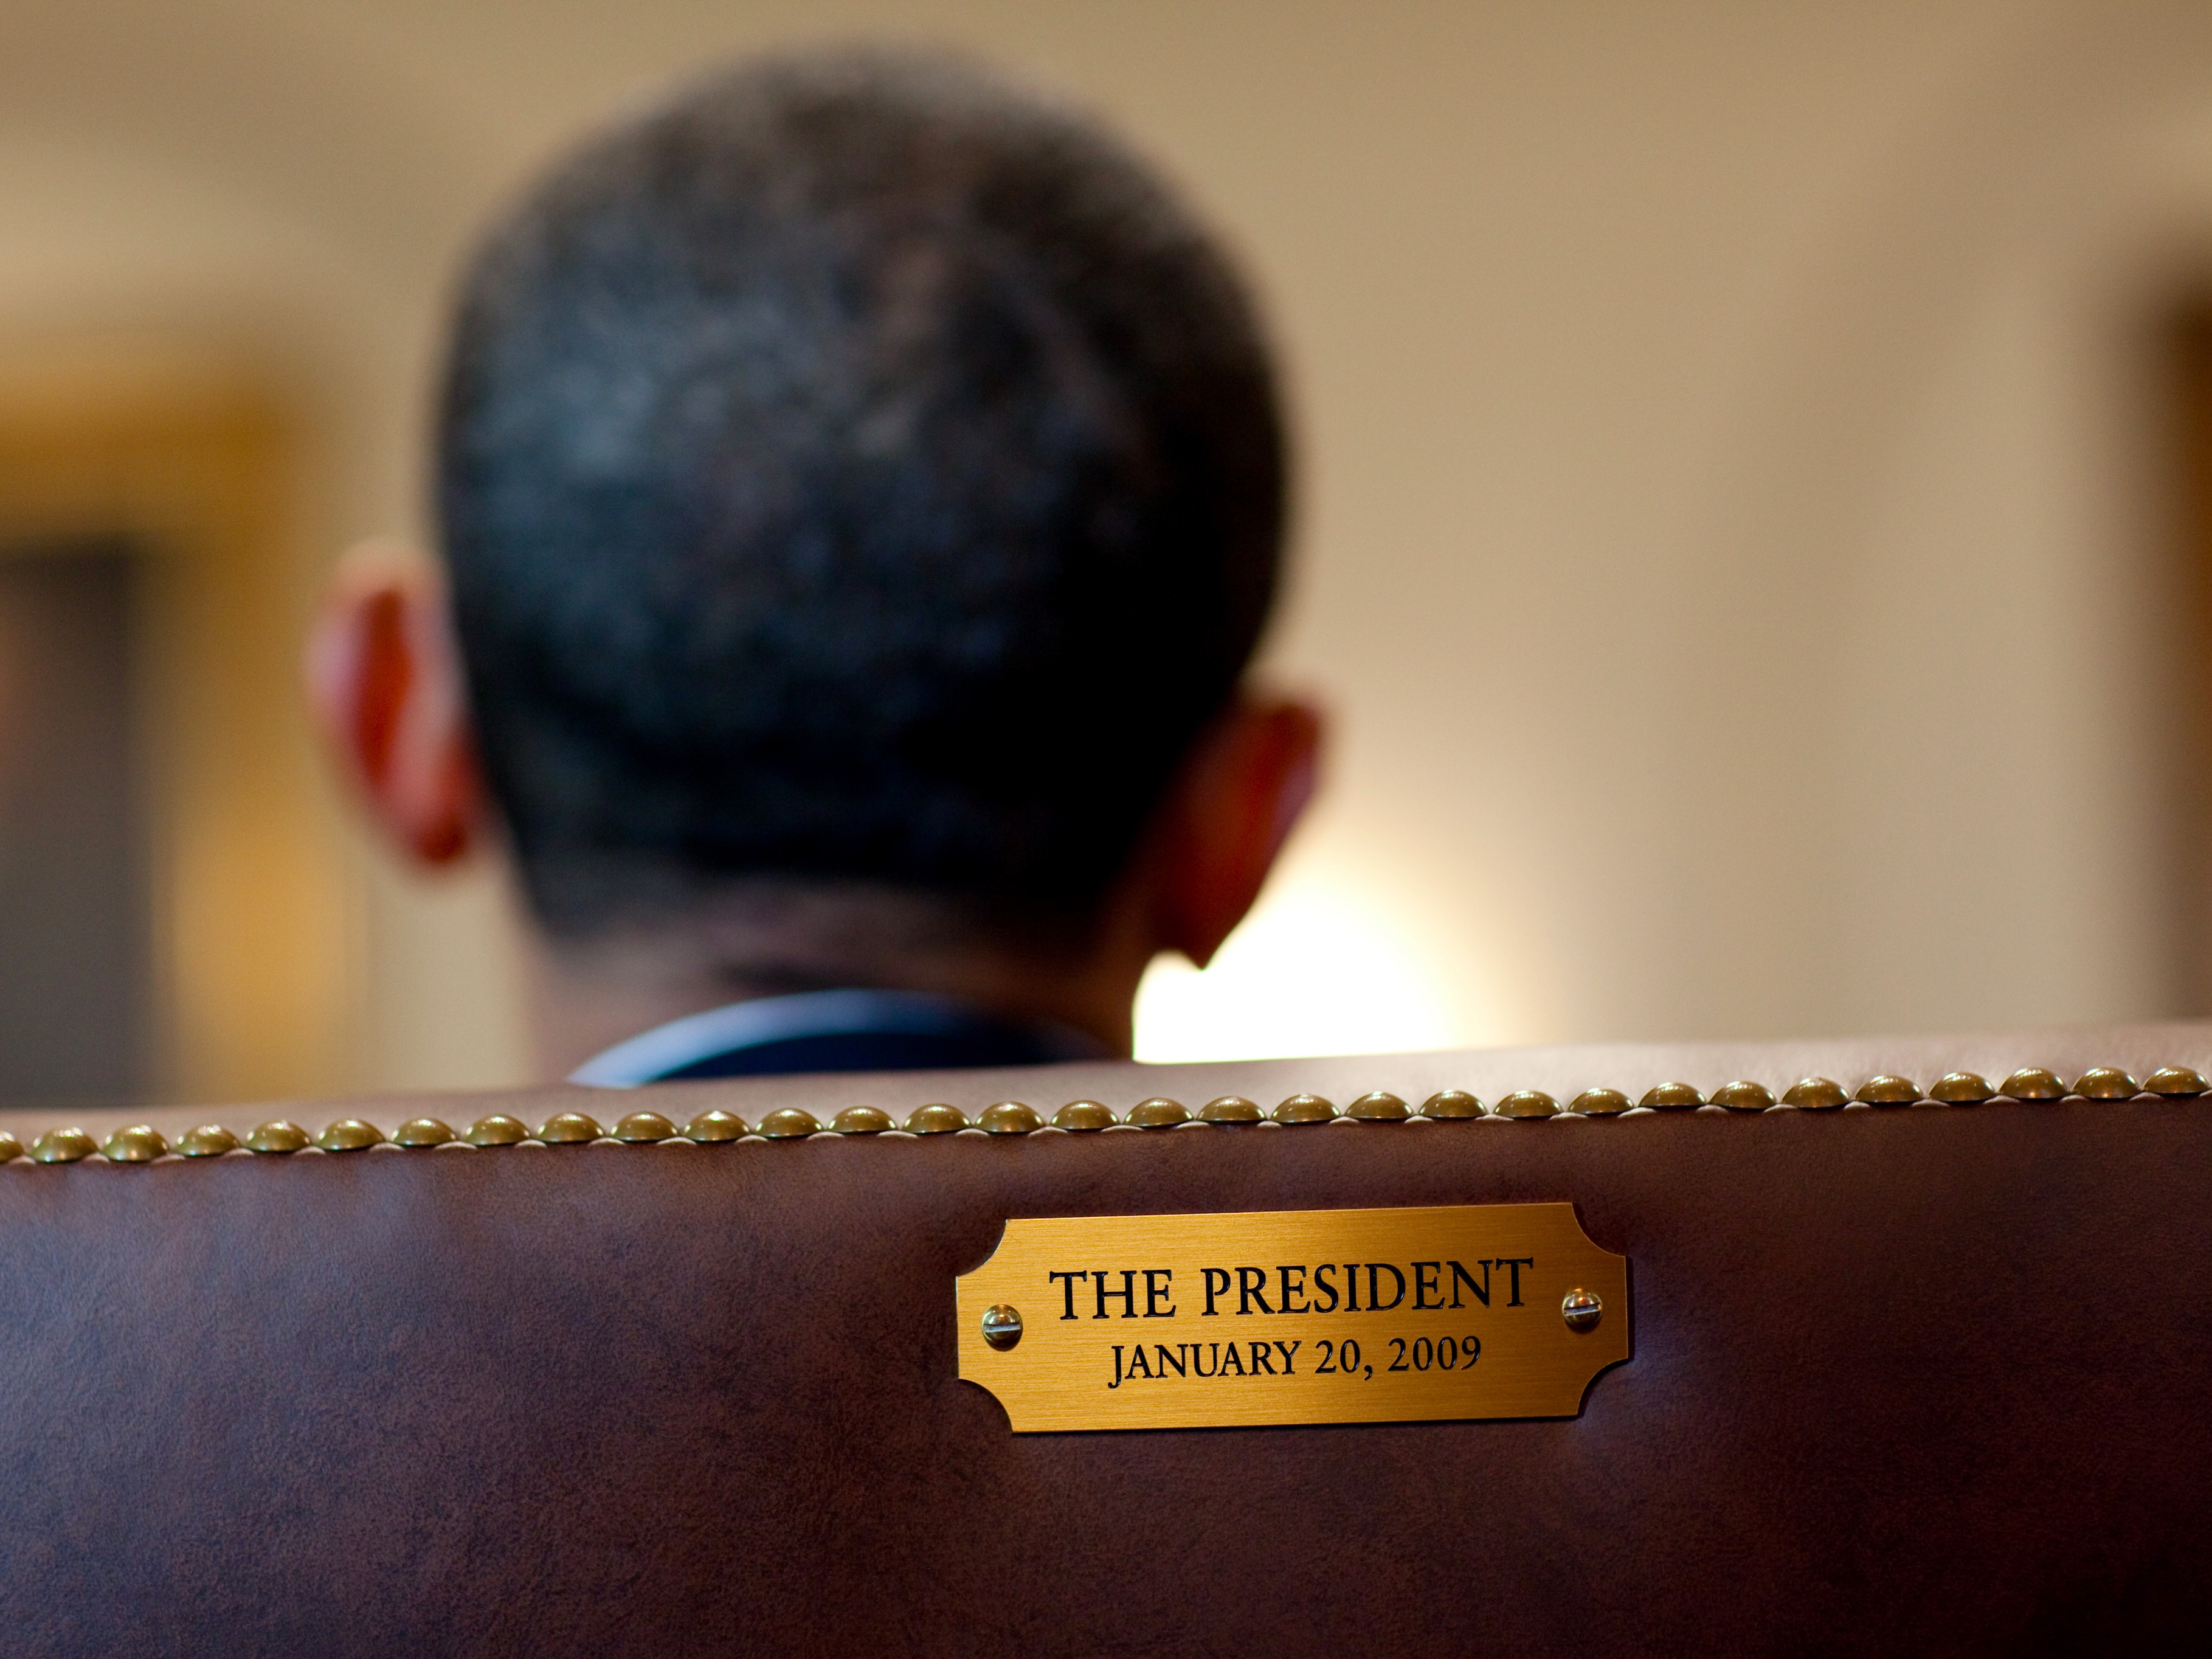 เก้าอี้ของโอบามาที่มีการสลักวันที่ในการเข้ารับตำแหน่งประธานาธิบดีไว้ / Official White House Photo by Pete Souza